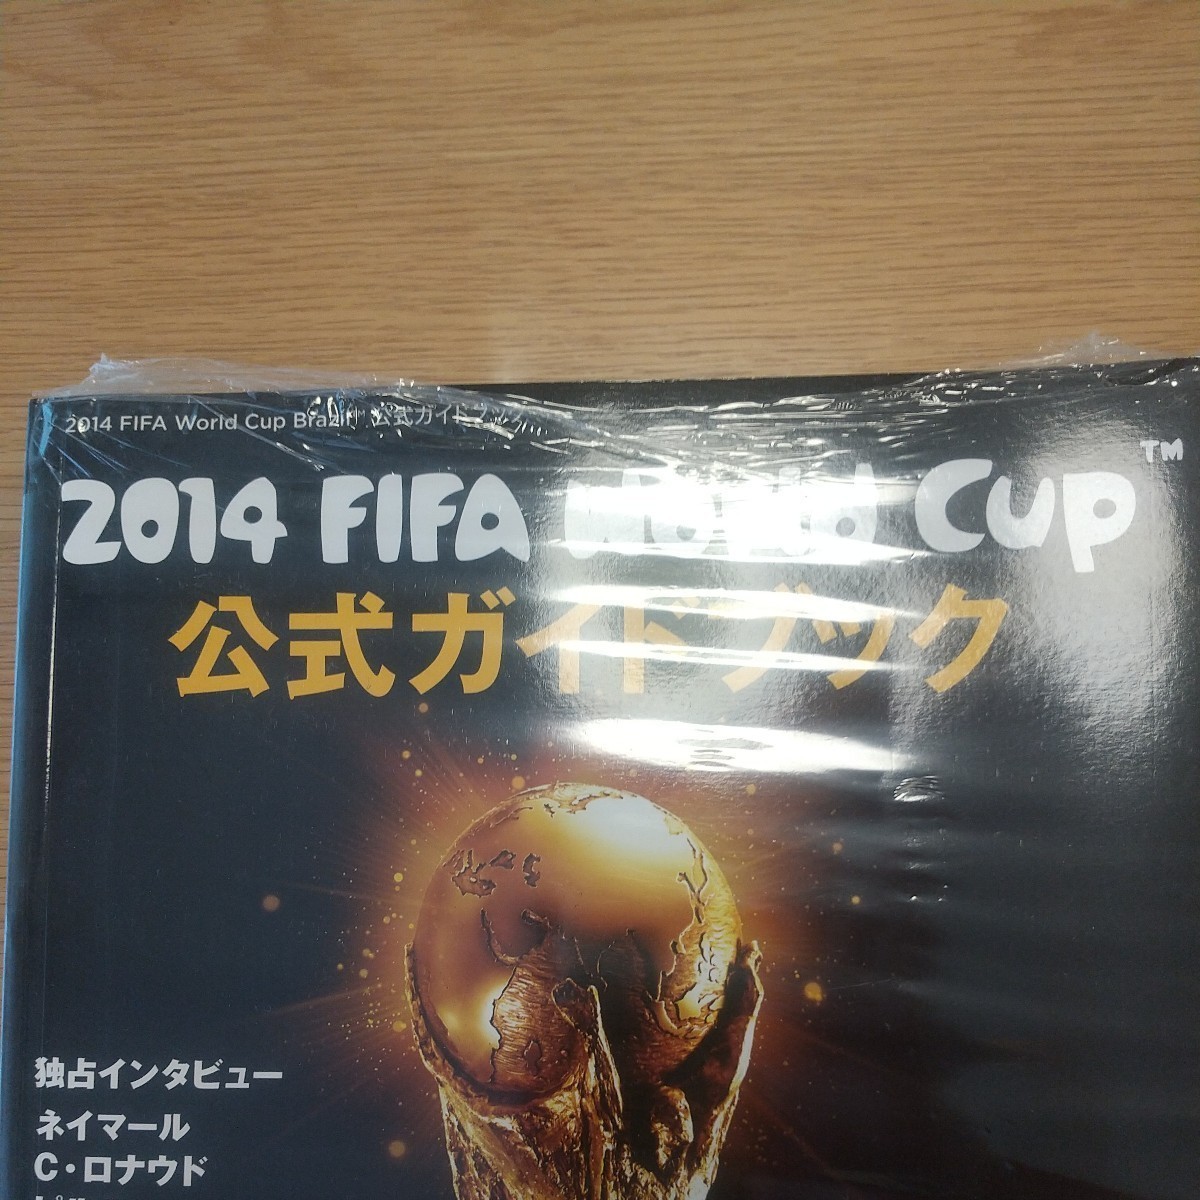 2014 FIFA World Cup 公式ガイドブック 完全保存版！ブラジル大会 公式ガイドブック 未使用 シュリンク一部破れあり_画像2